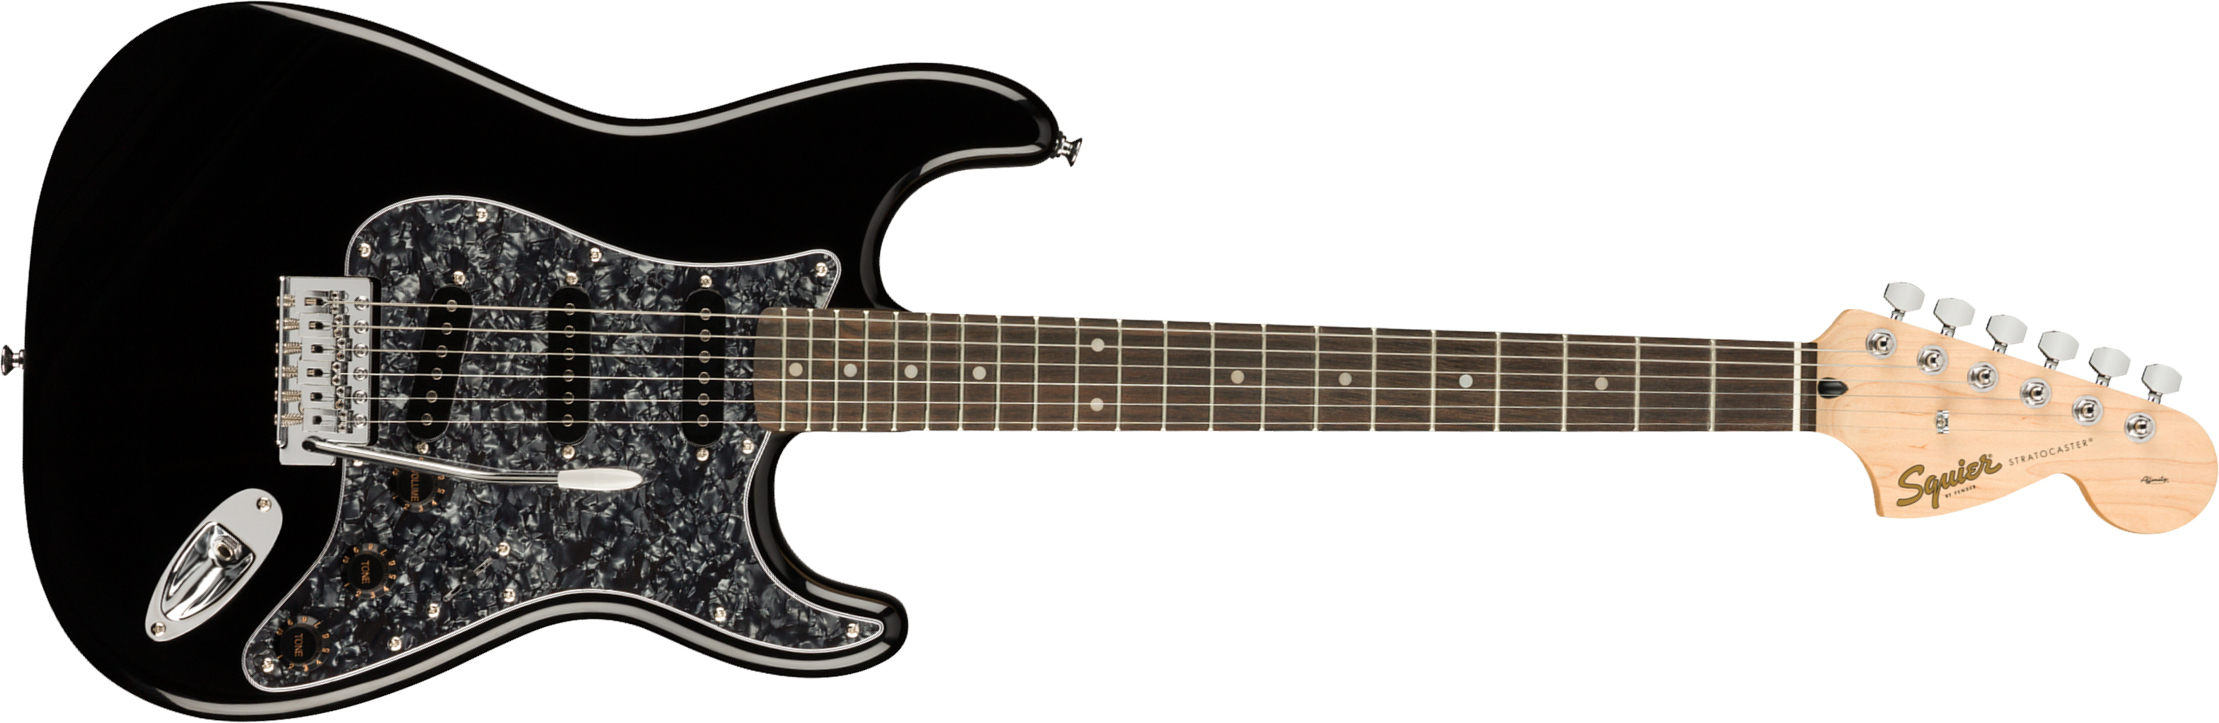 Squier Strat Affinity Black Pearl Pickguard Fsr Ltd Sss Trem Lau - Black - Guitare Électrique Forme Str - Main picture